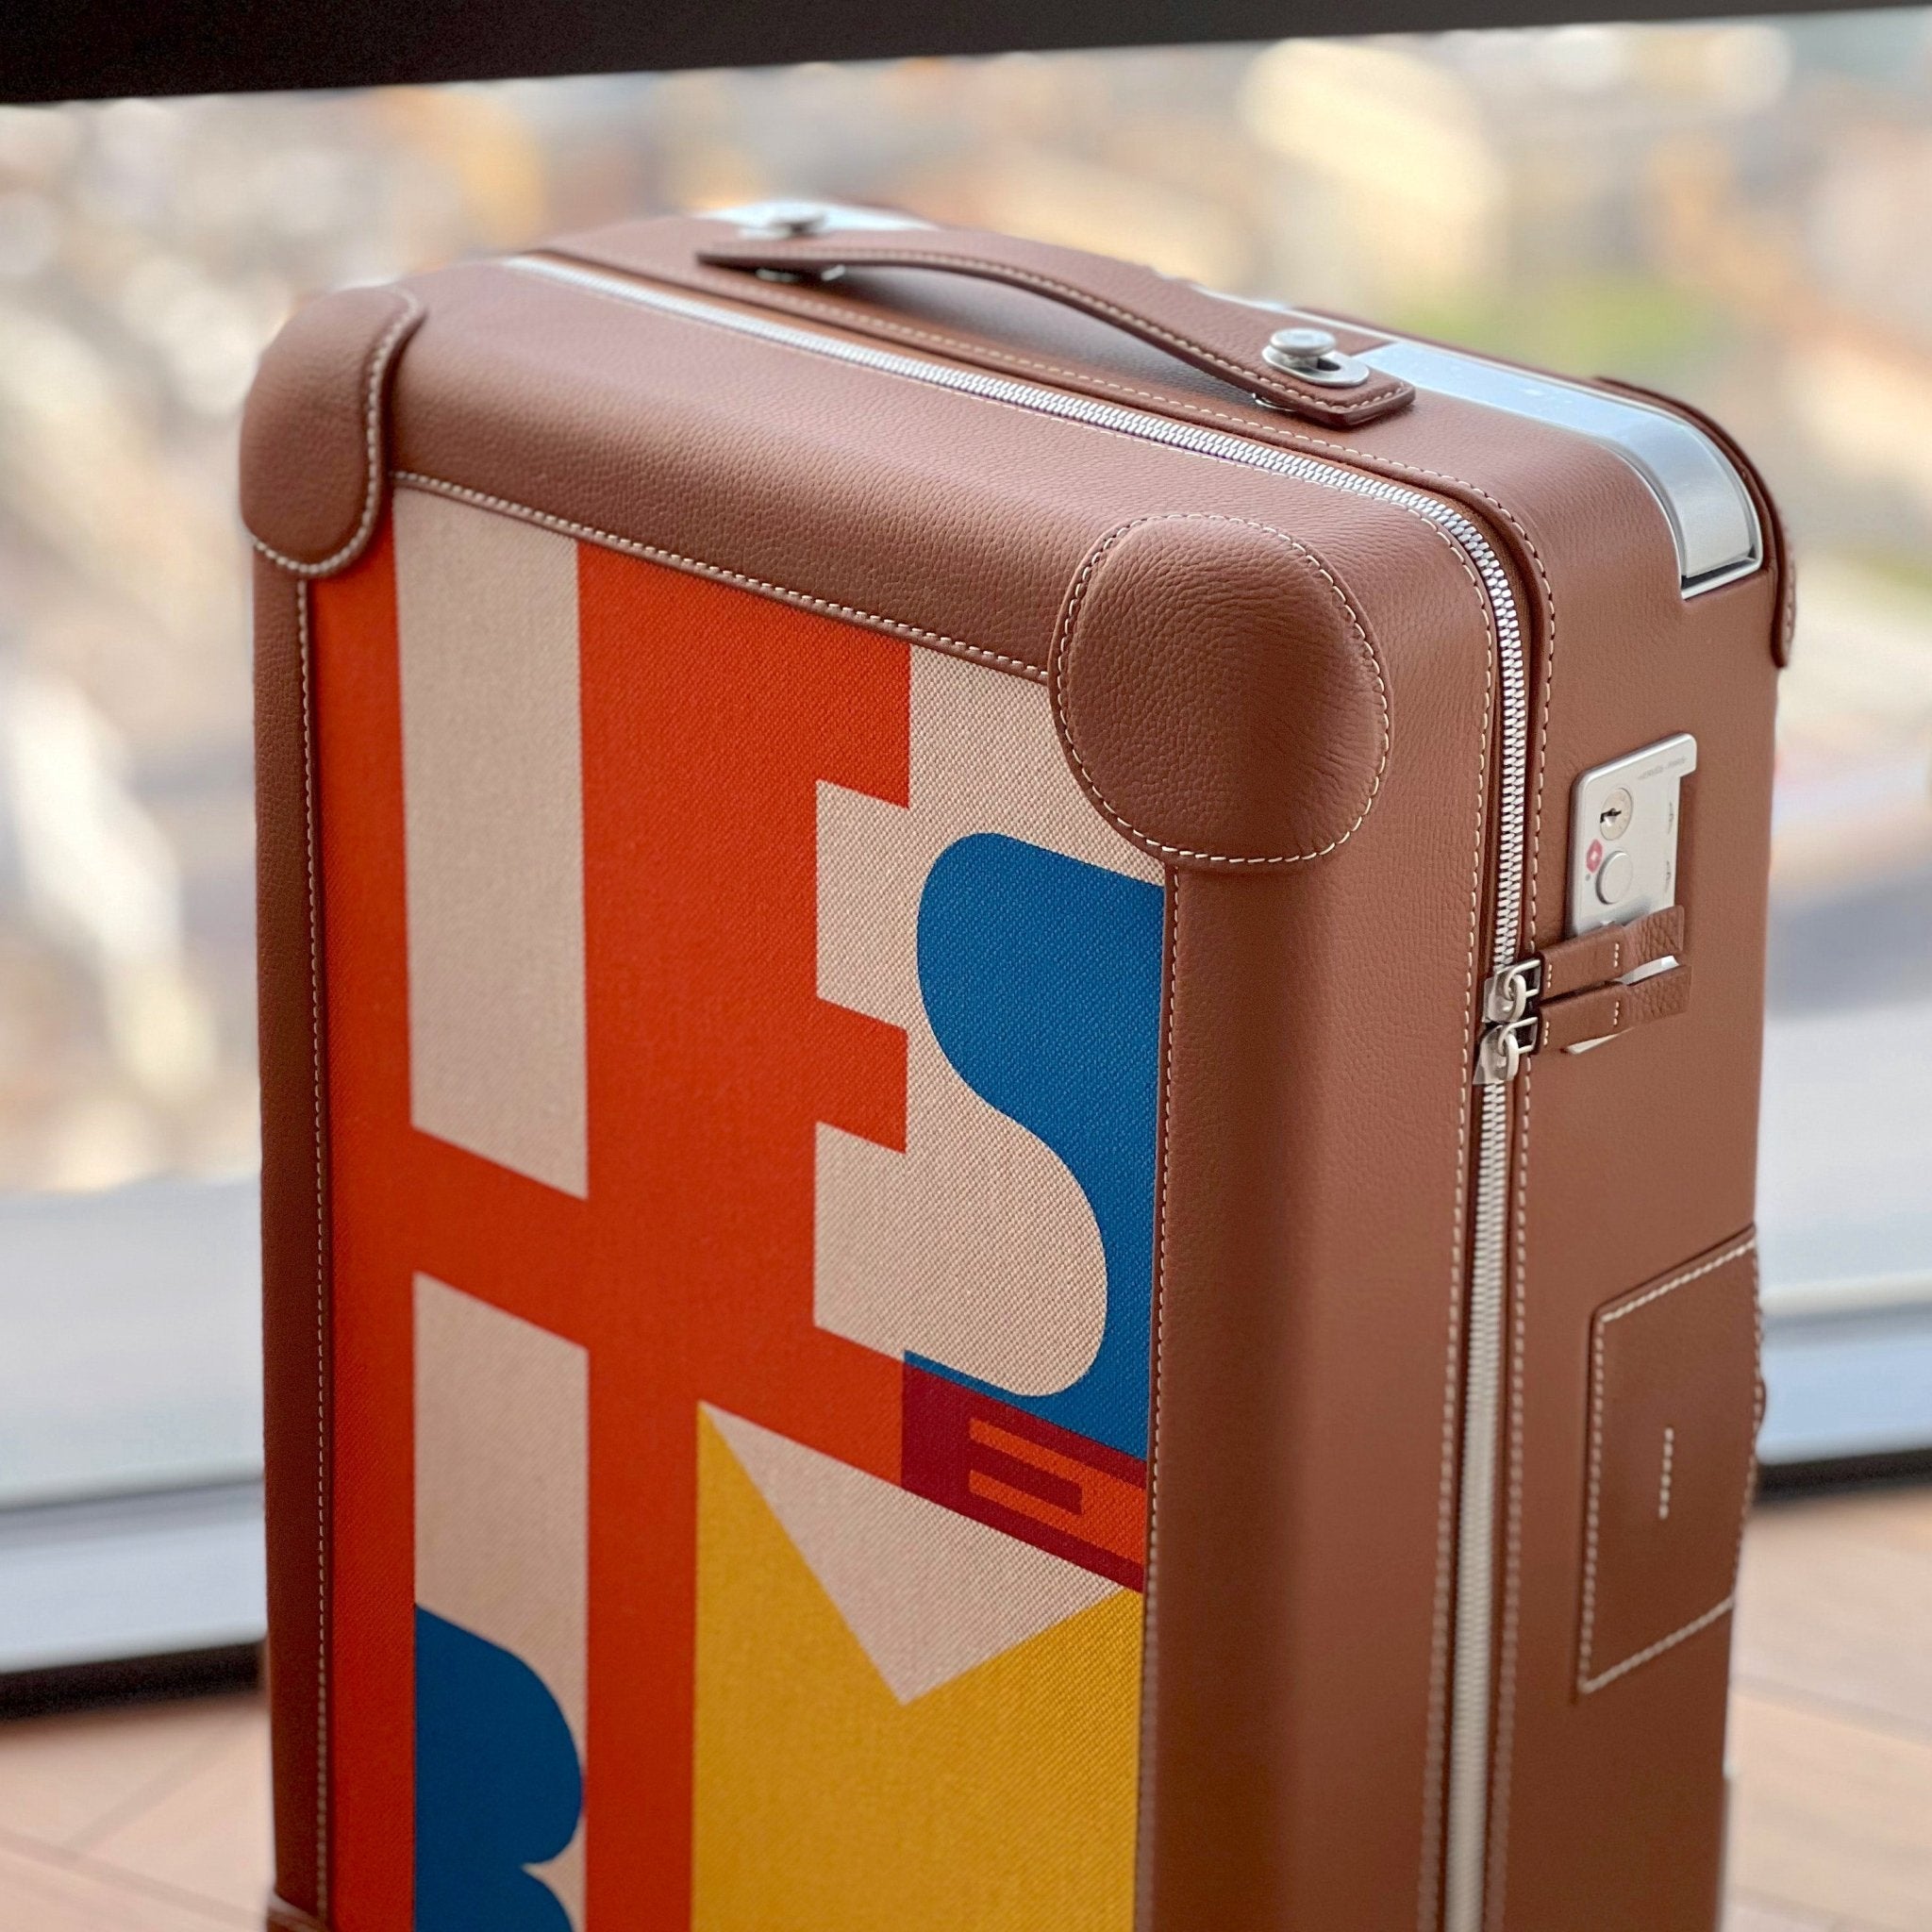 Limited Edition, Hermès R.M.S Suitcase